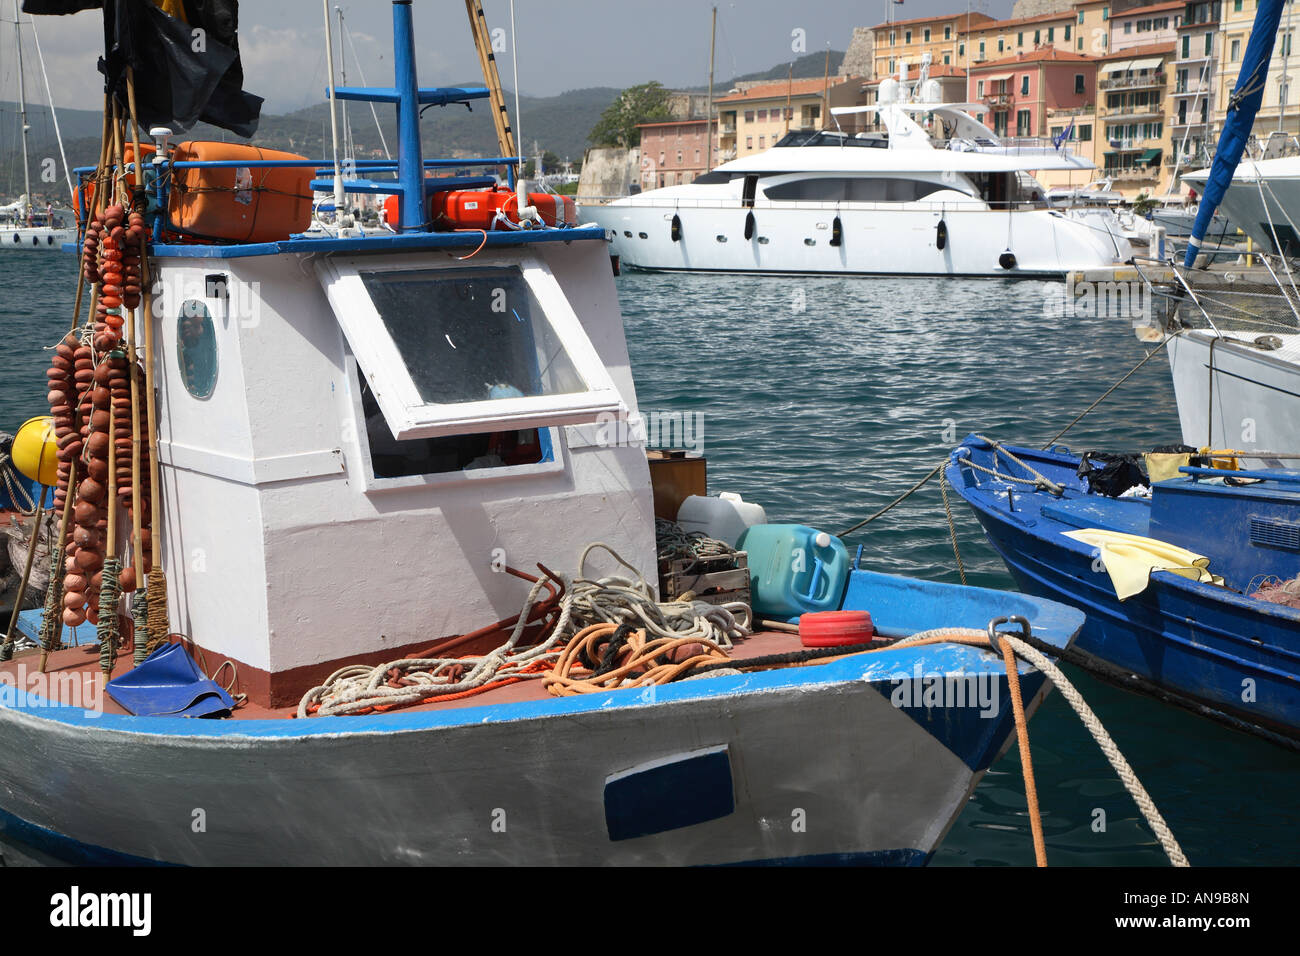 La nautica contrasti tra ricchi e poveri si vede al porto di Portoferraio, Isola d'Elba, Toscana, Italia Foto Stock